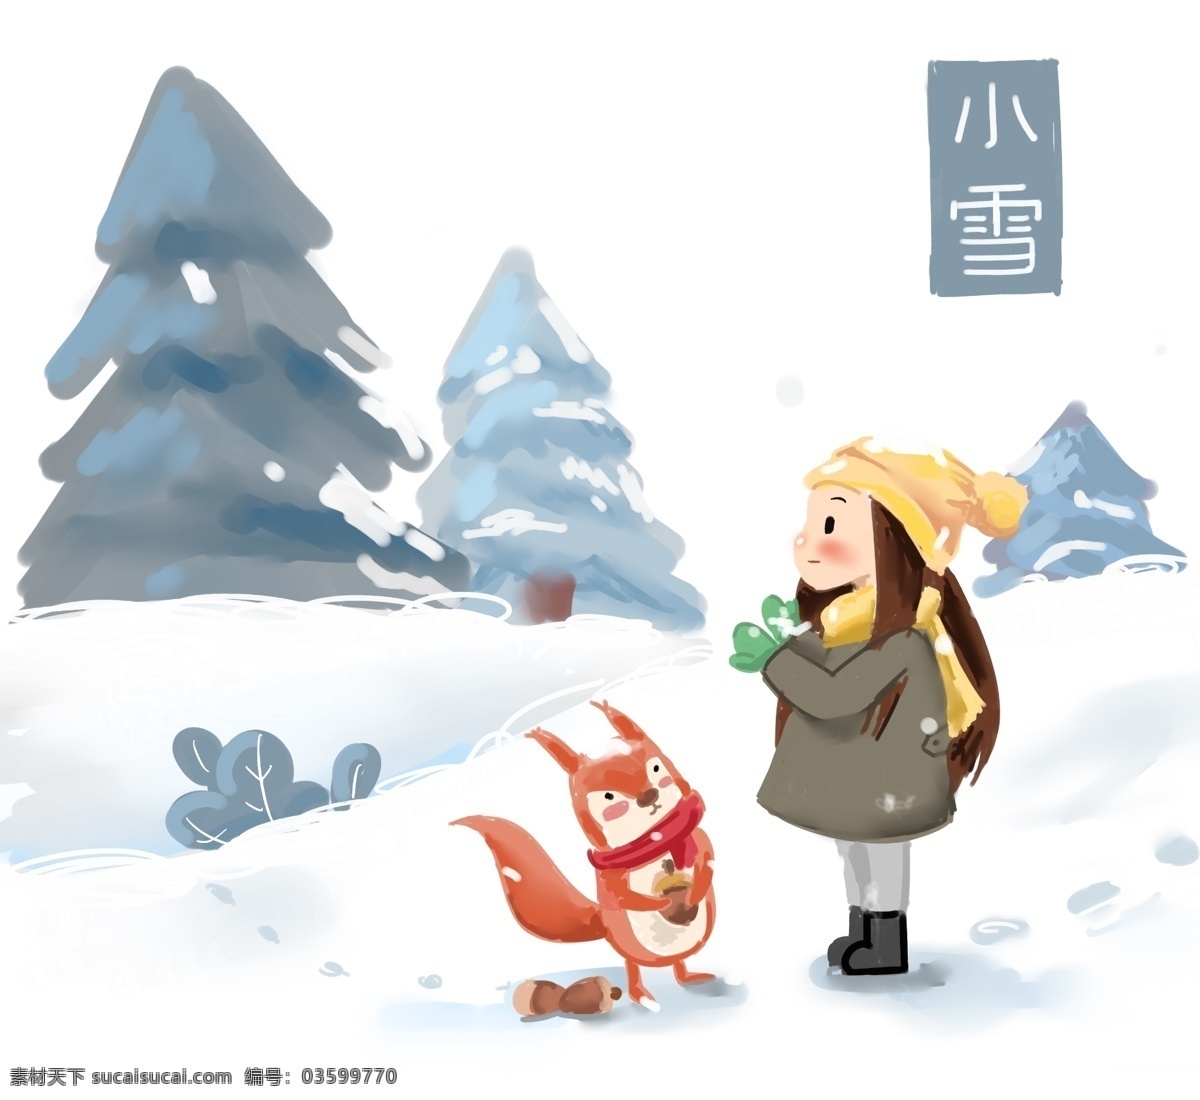 小雪 中国 传统 节气 插画 手绘 松鼠 松树 女孩 可爱 温馨 围巾 雪地 脚印 积雪 冬季 冬天 中国传统